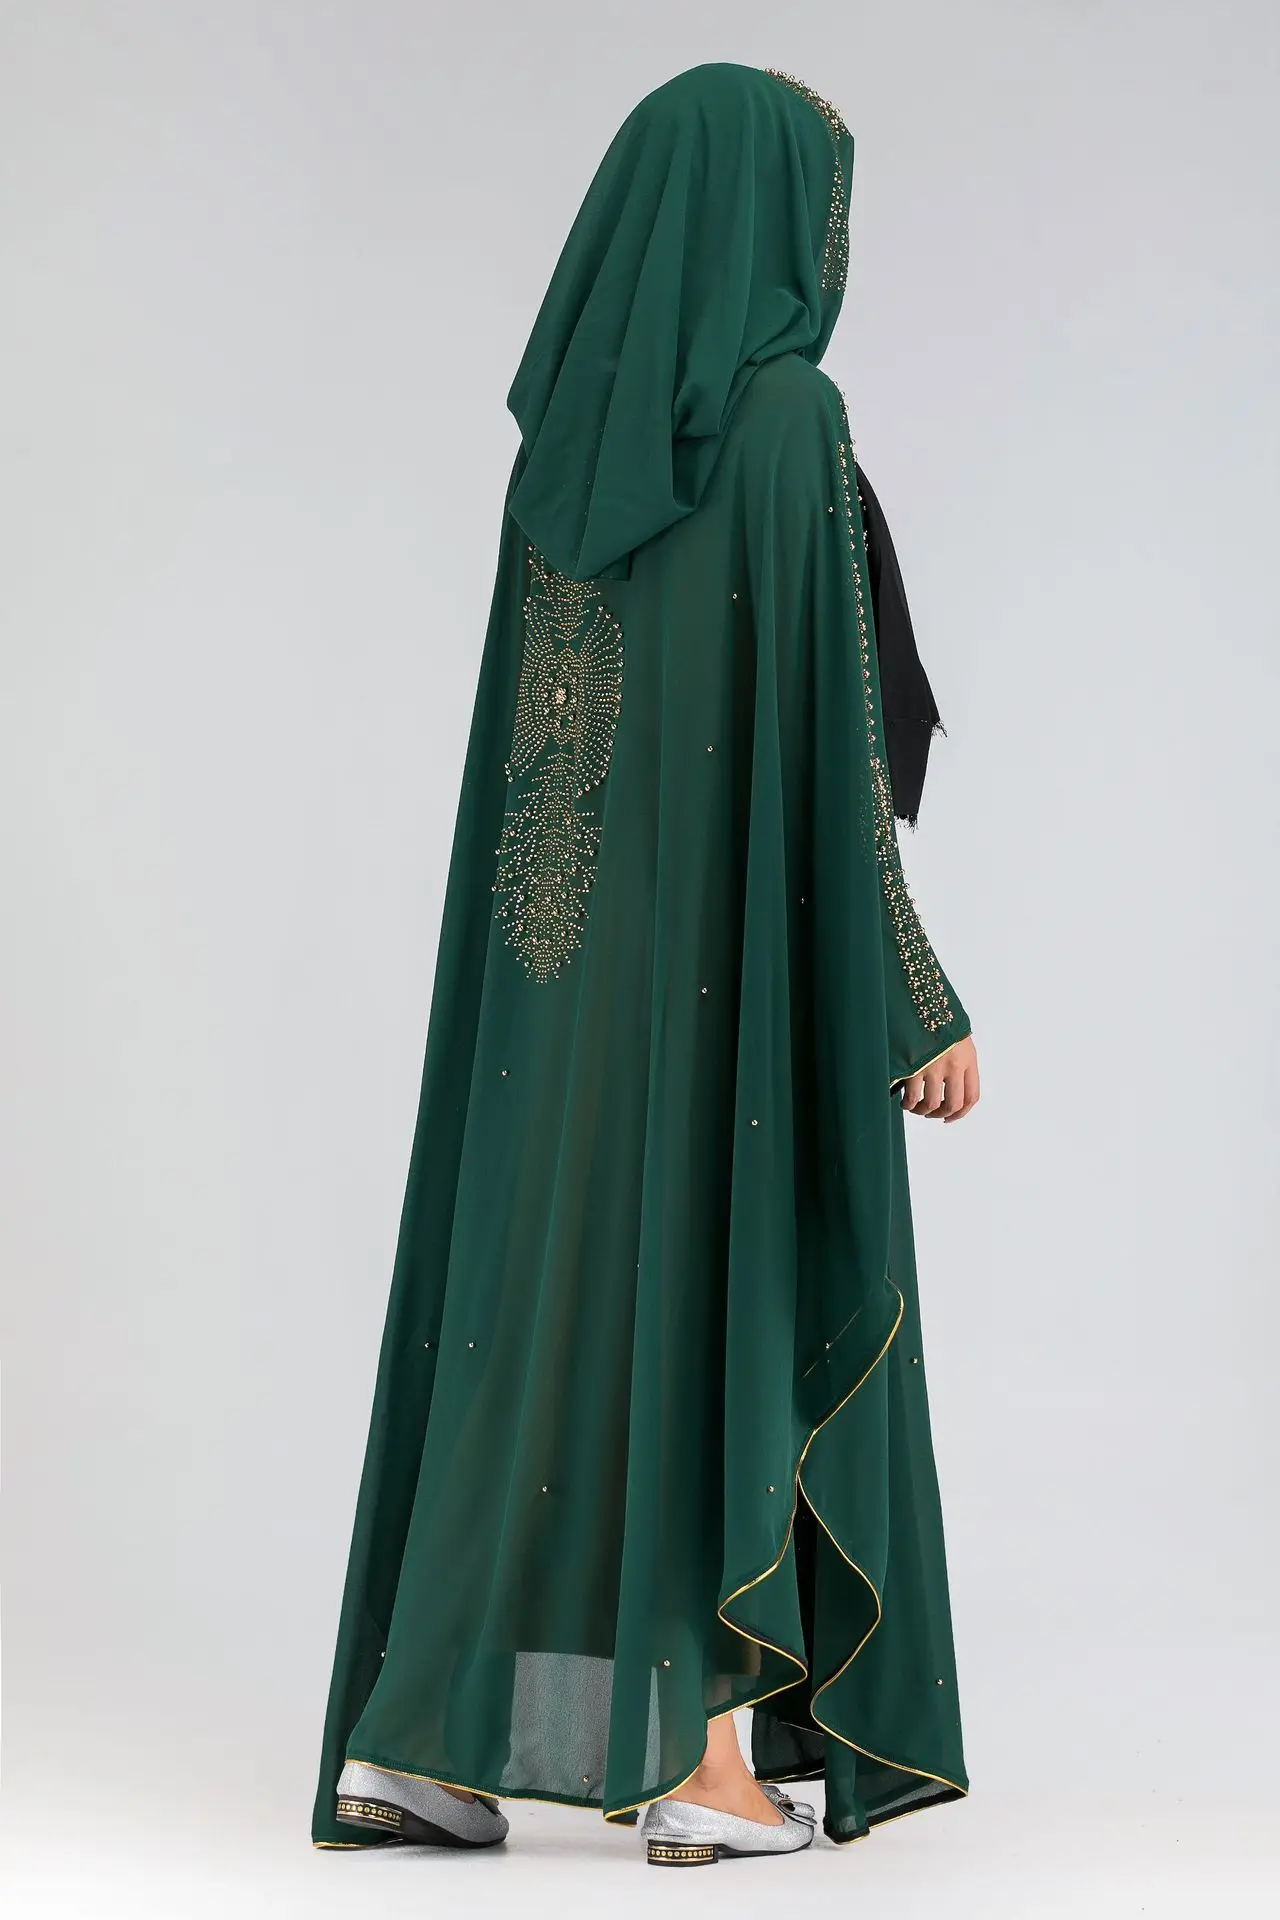 Dubajaus Musulmonų Abaja Suknelė Moterims Outwear Maroko Kaftan Abayas Tunika Arabų Jubah Islamo Drabužių Ilgas Chalatas, Laisvi Hijab Suknelės